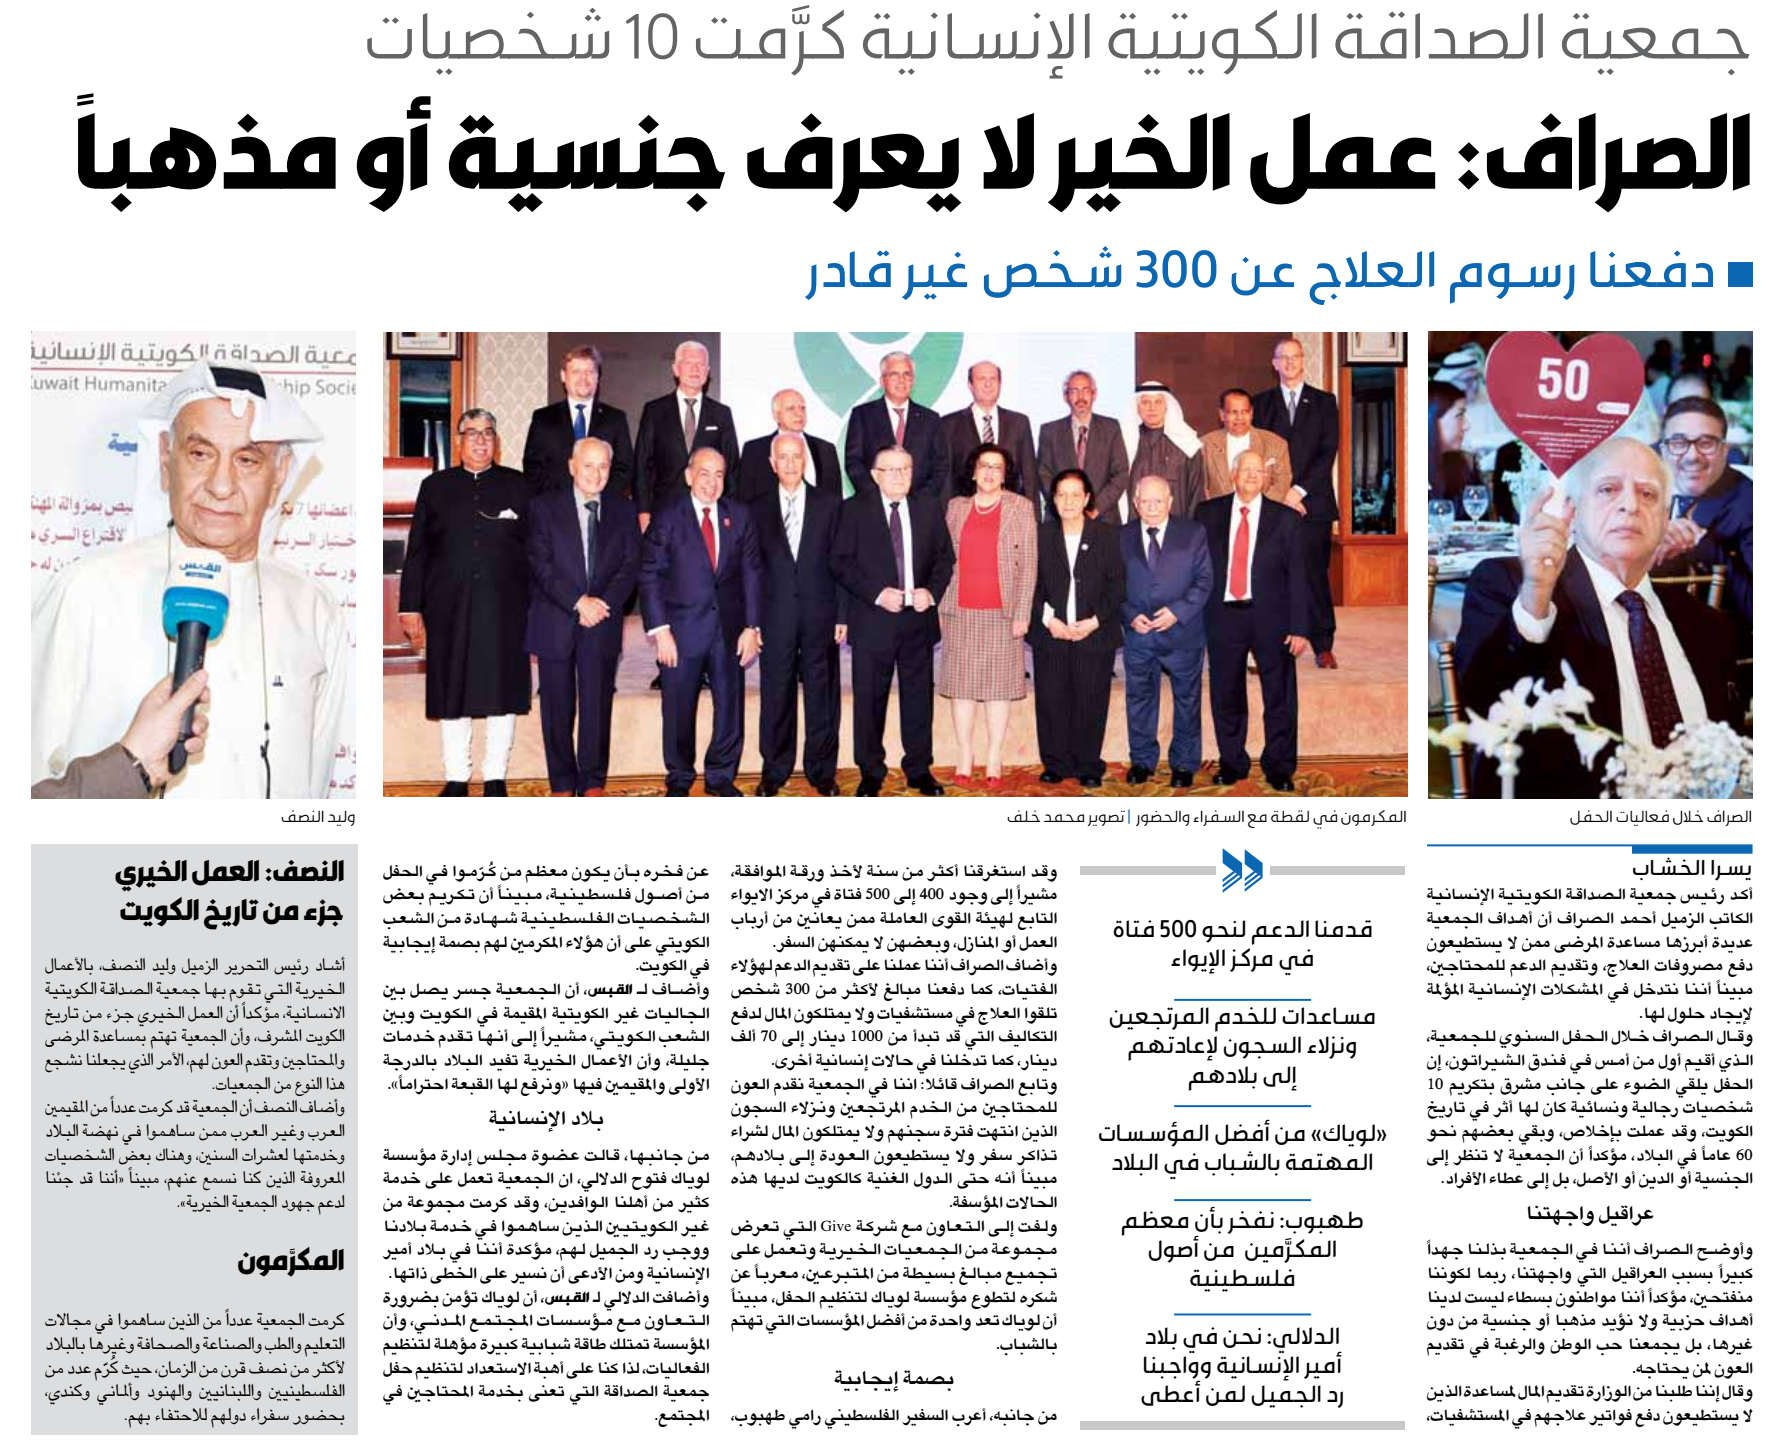 جمعية الصداقة الكويتية كرمت 10 شخصيات